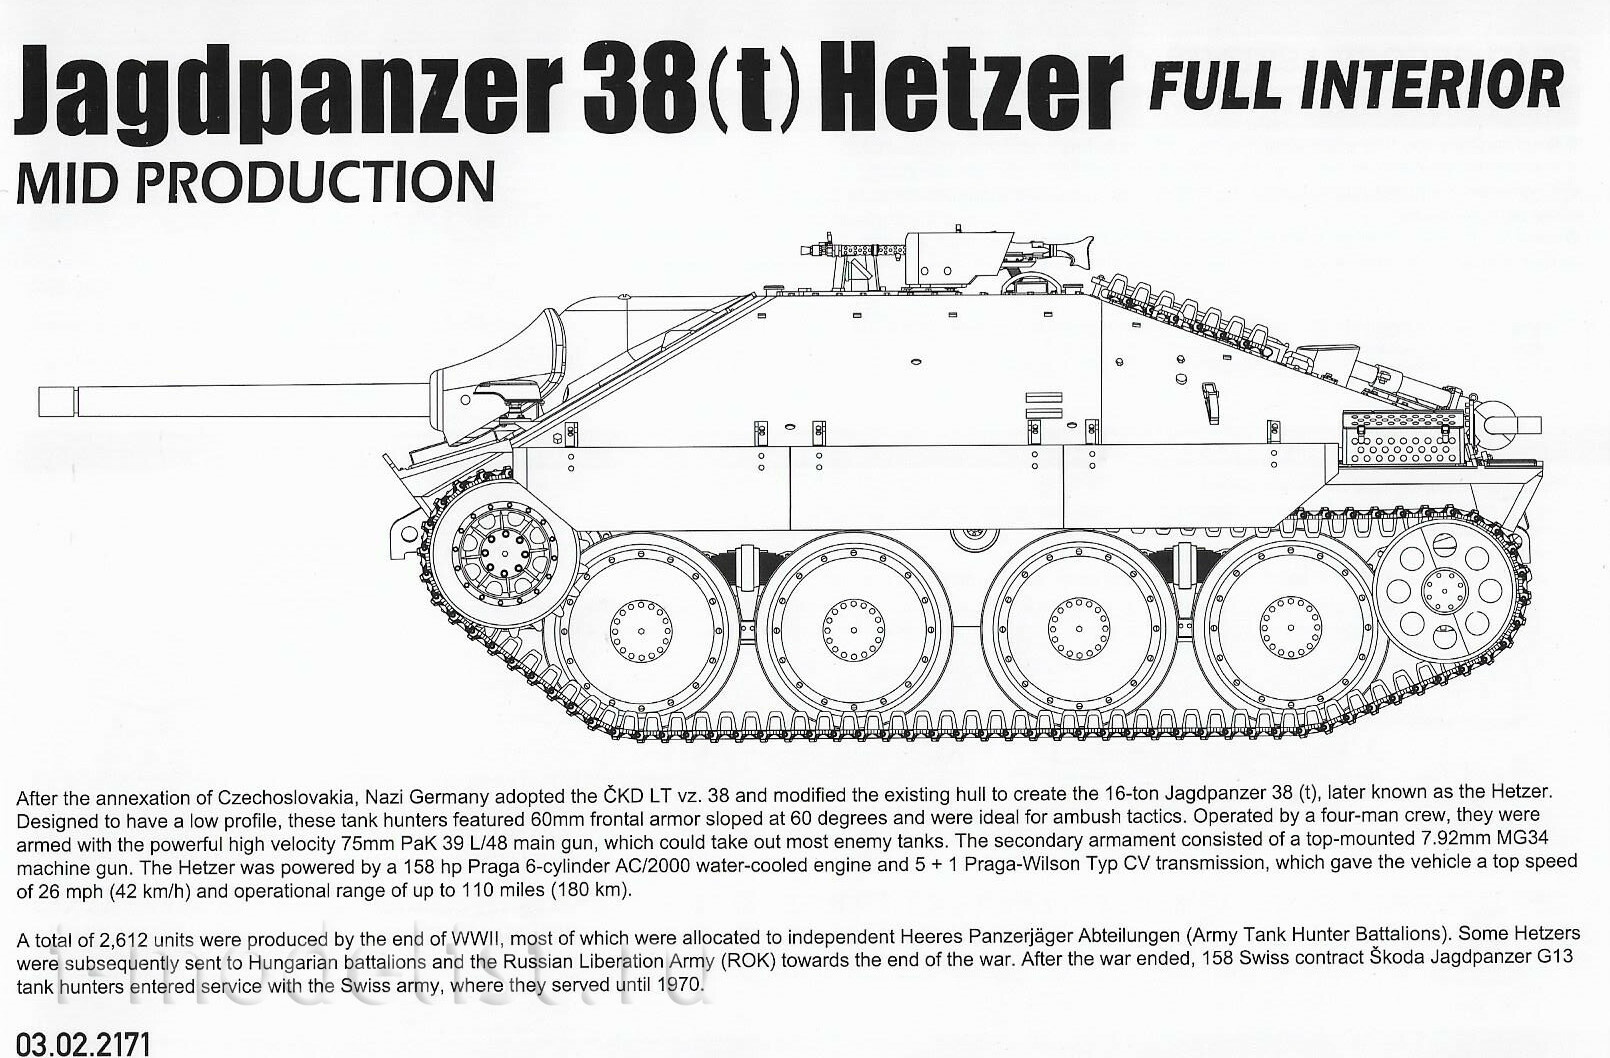 2171 Takom 1/35 Немецкая САУ Jagdpanzer 38(t) Hetzer (промежуточная) с полным интерьером